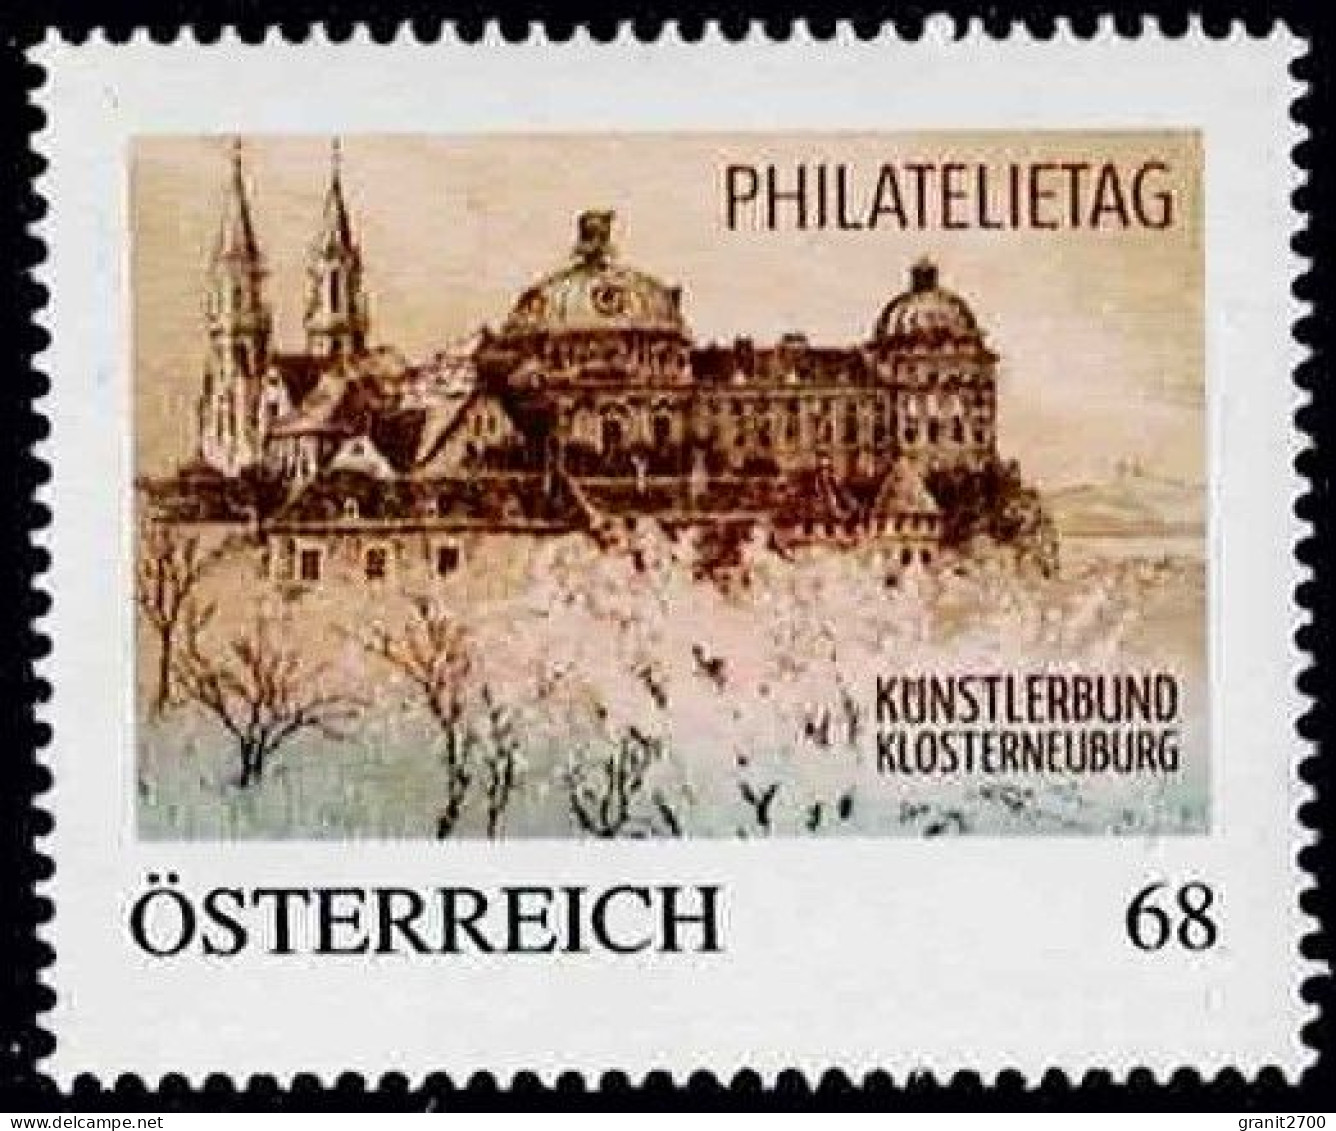 PM  Philatelietag Klosterneuburg  Ex Bogen Nr. 8115053 Vom 13.8.2015  Postfrisch - Personnalized Stamps